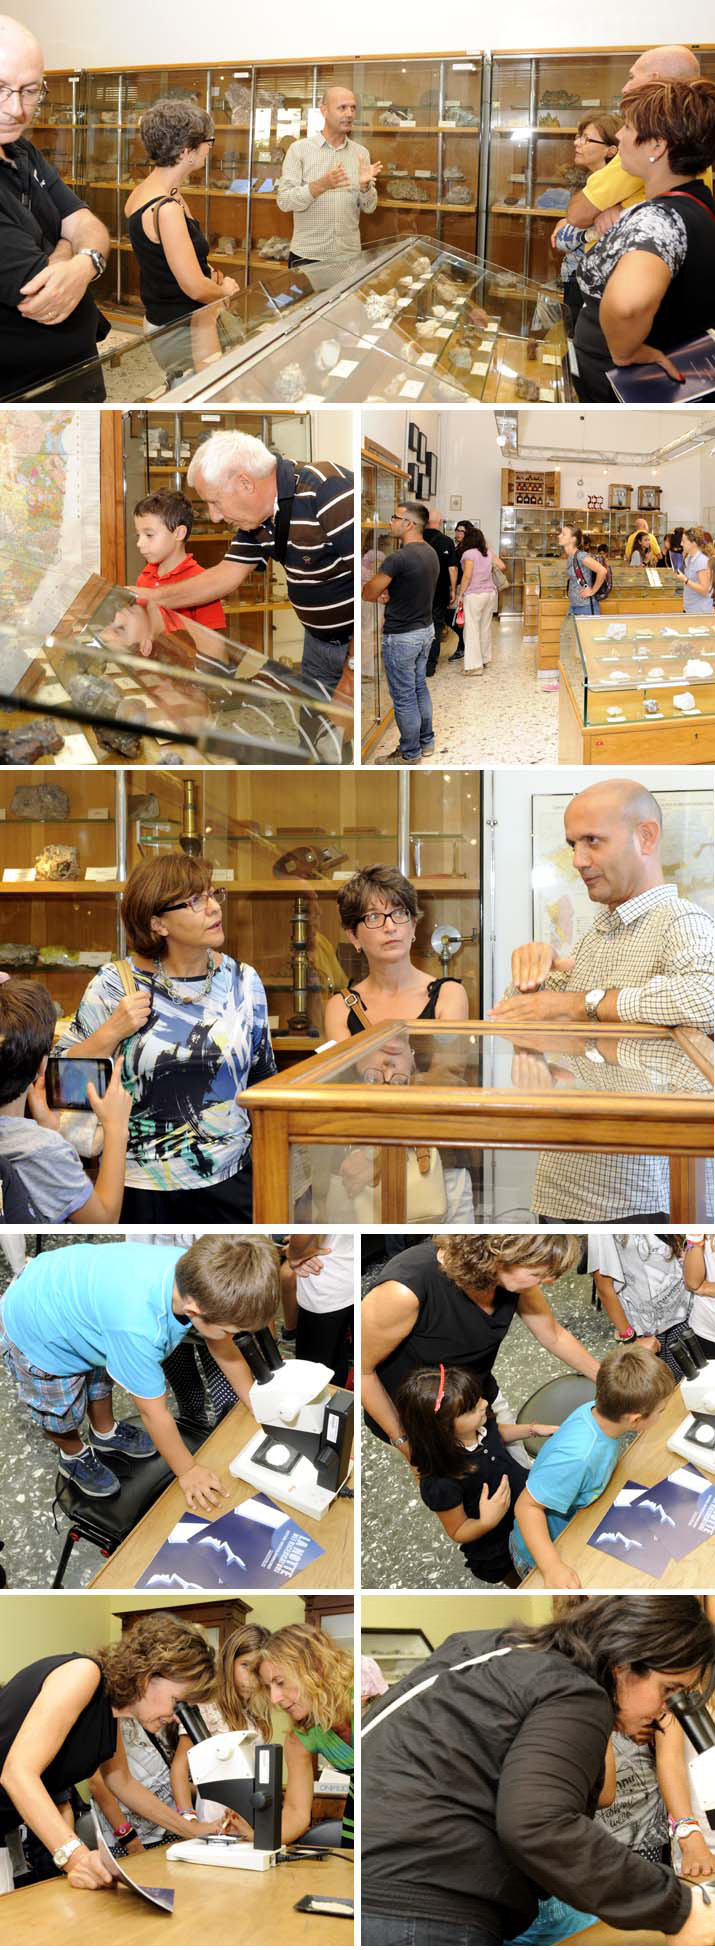 Cagliari, 22 settembre 2015 - Visite nei musei universitari di via Trentino